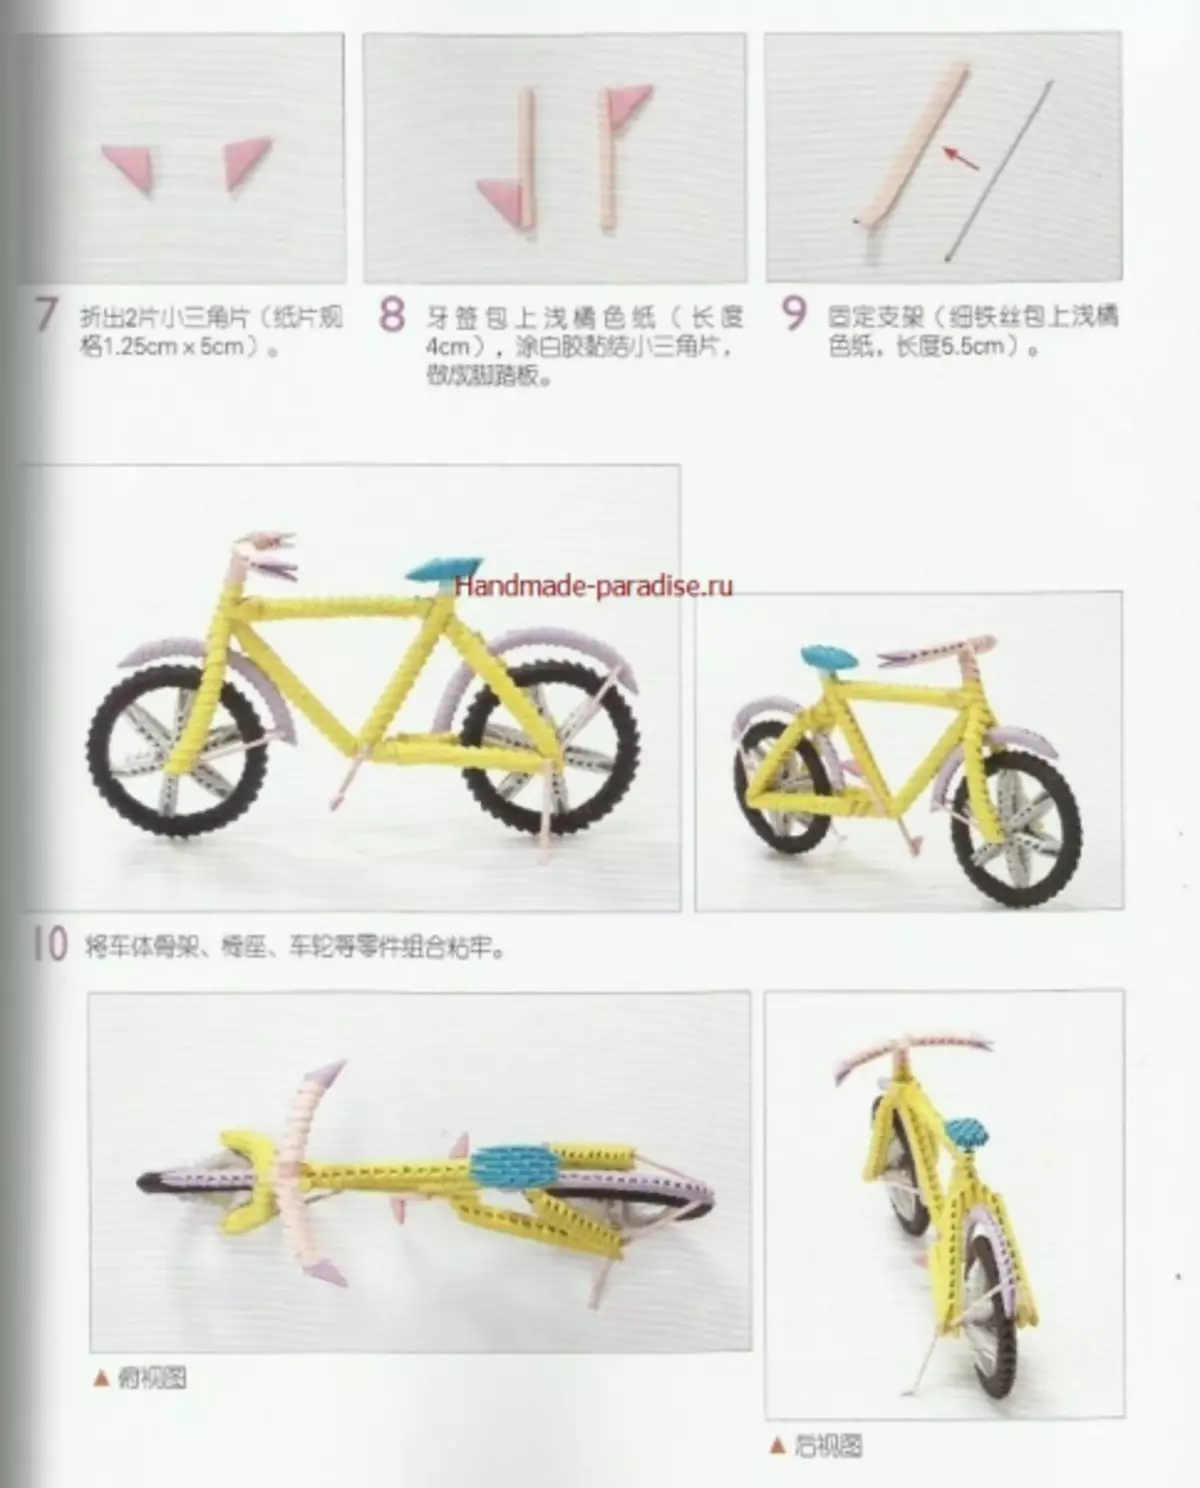 Modulaire origami. Japans tijdschrift met masterclasses